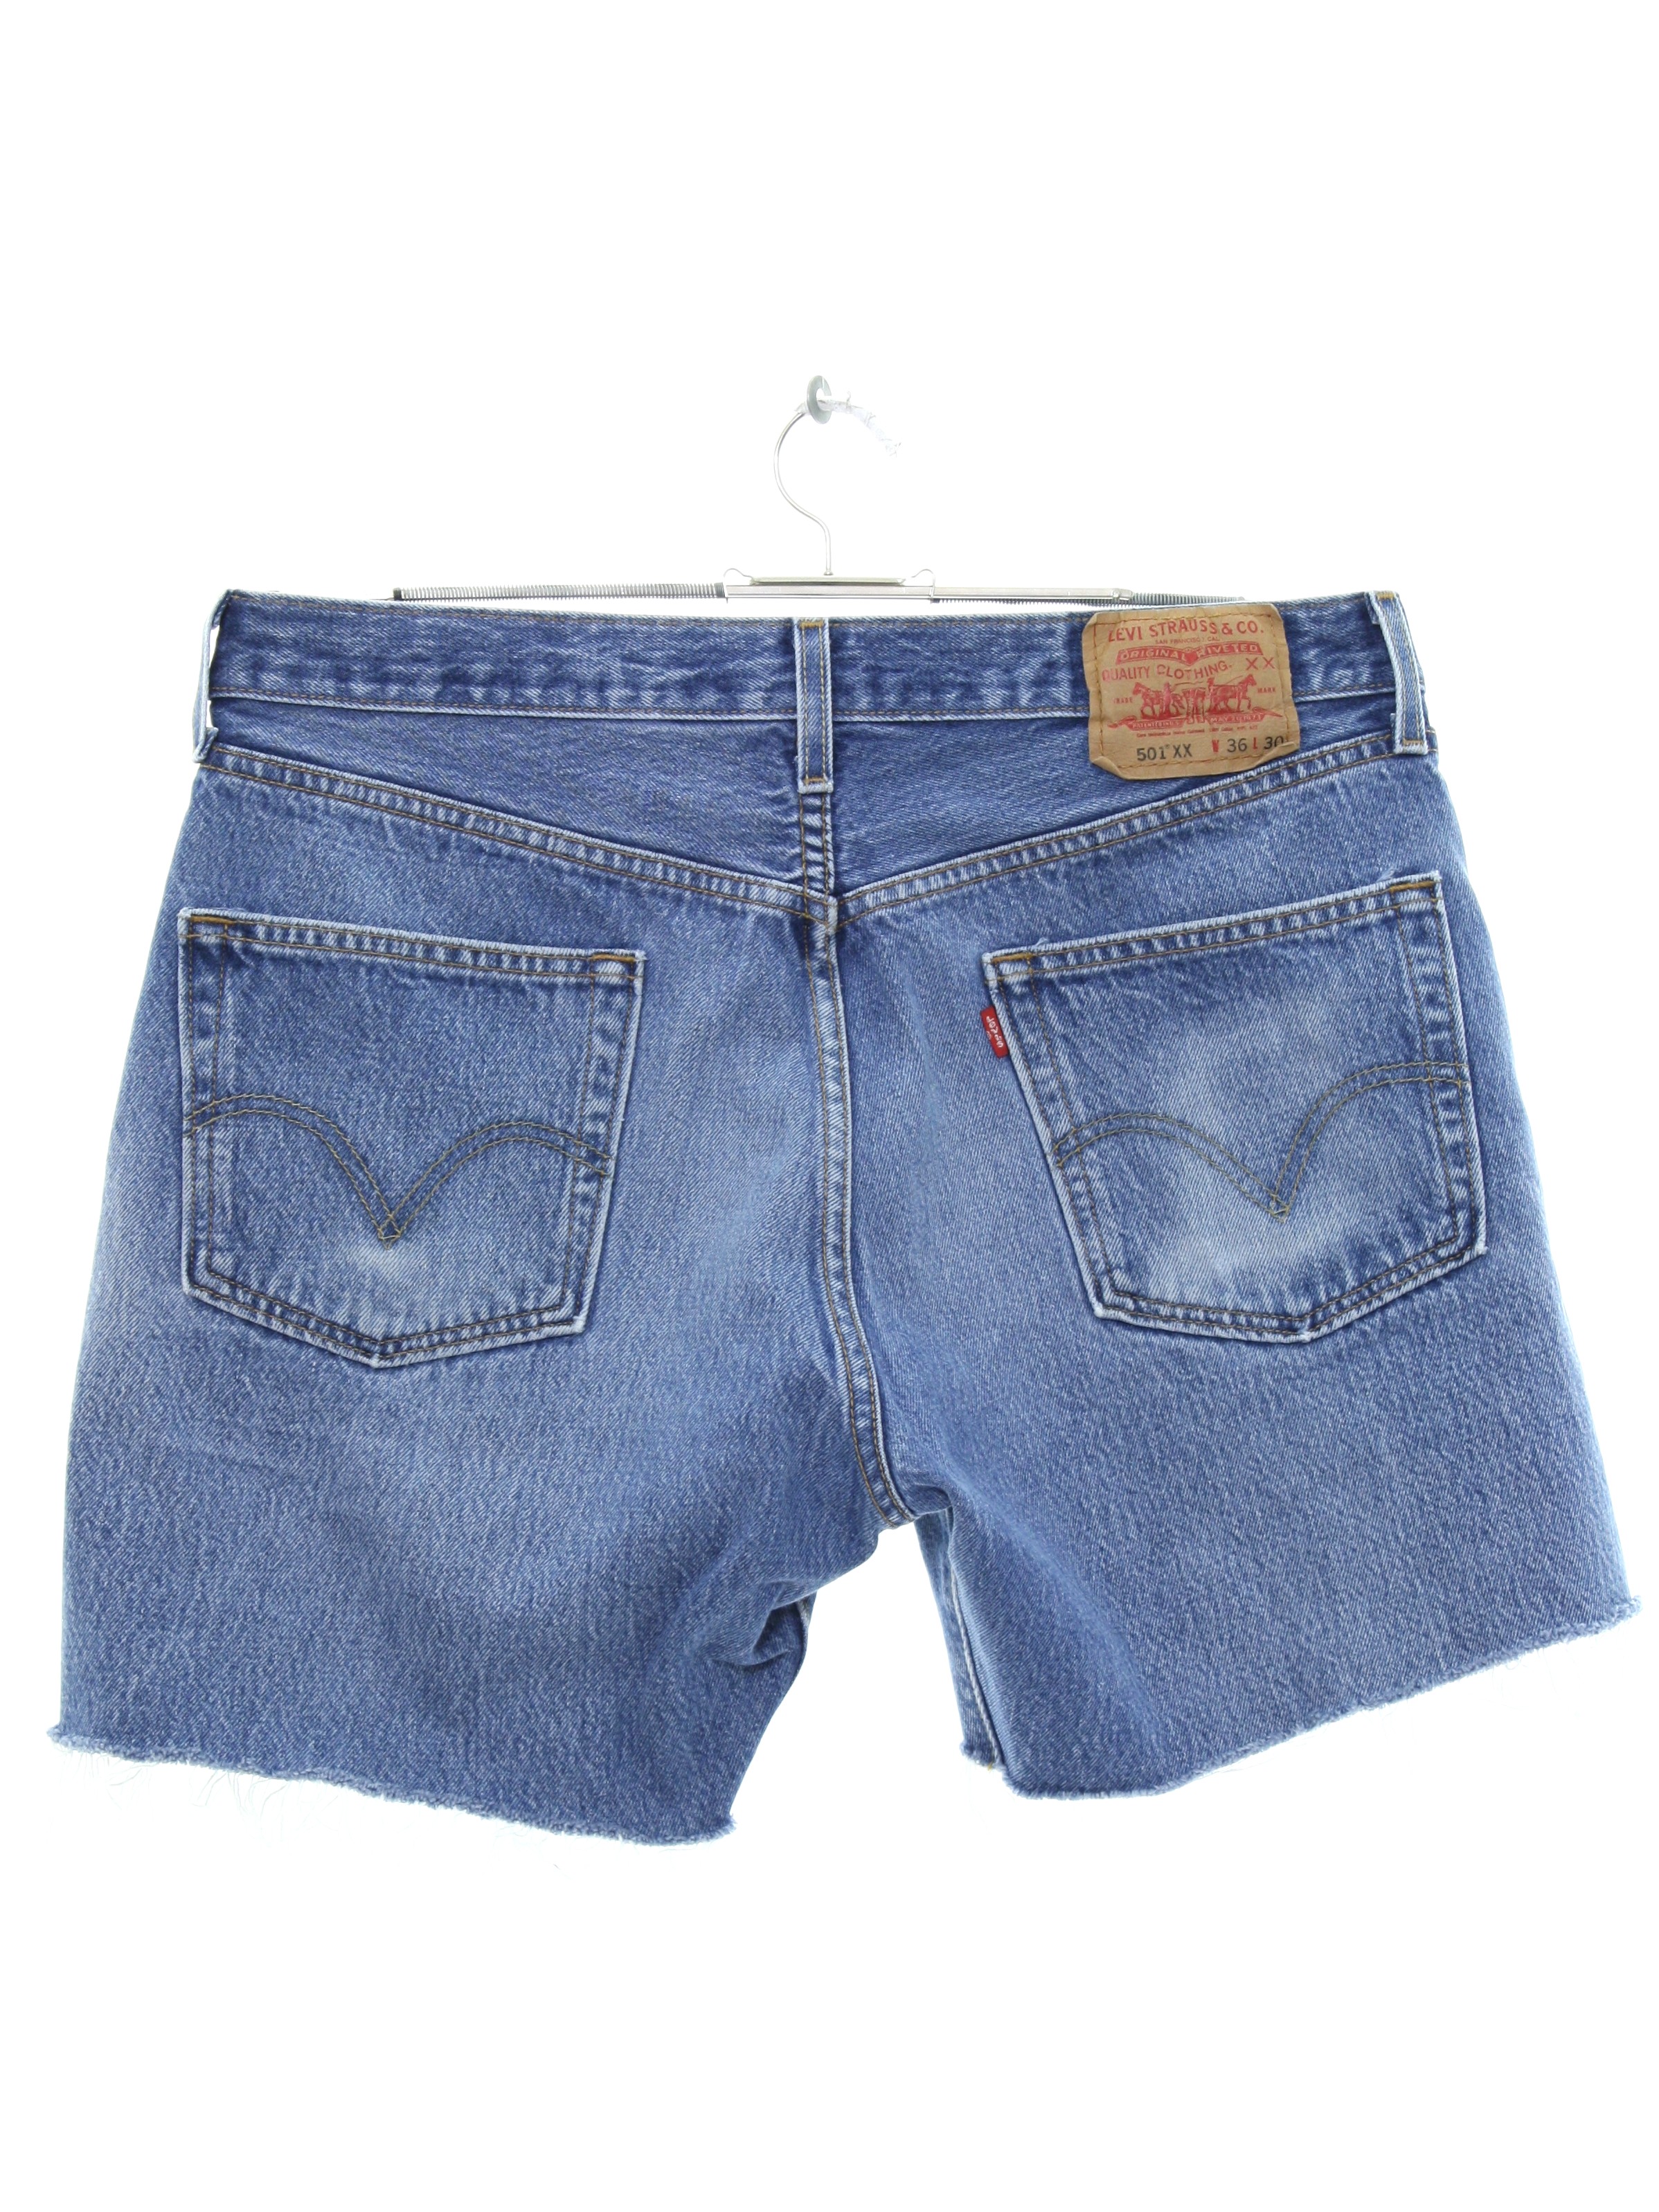 1990's Shorts (Levis 501XX): 90s -Levis 501XX- Mens faded blue cotton ...